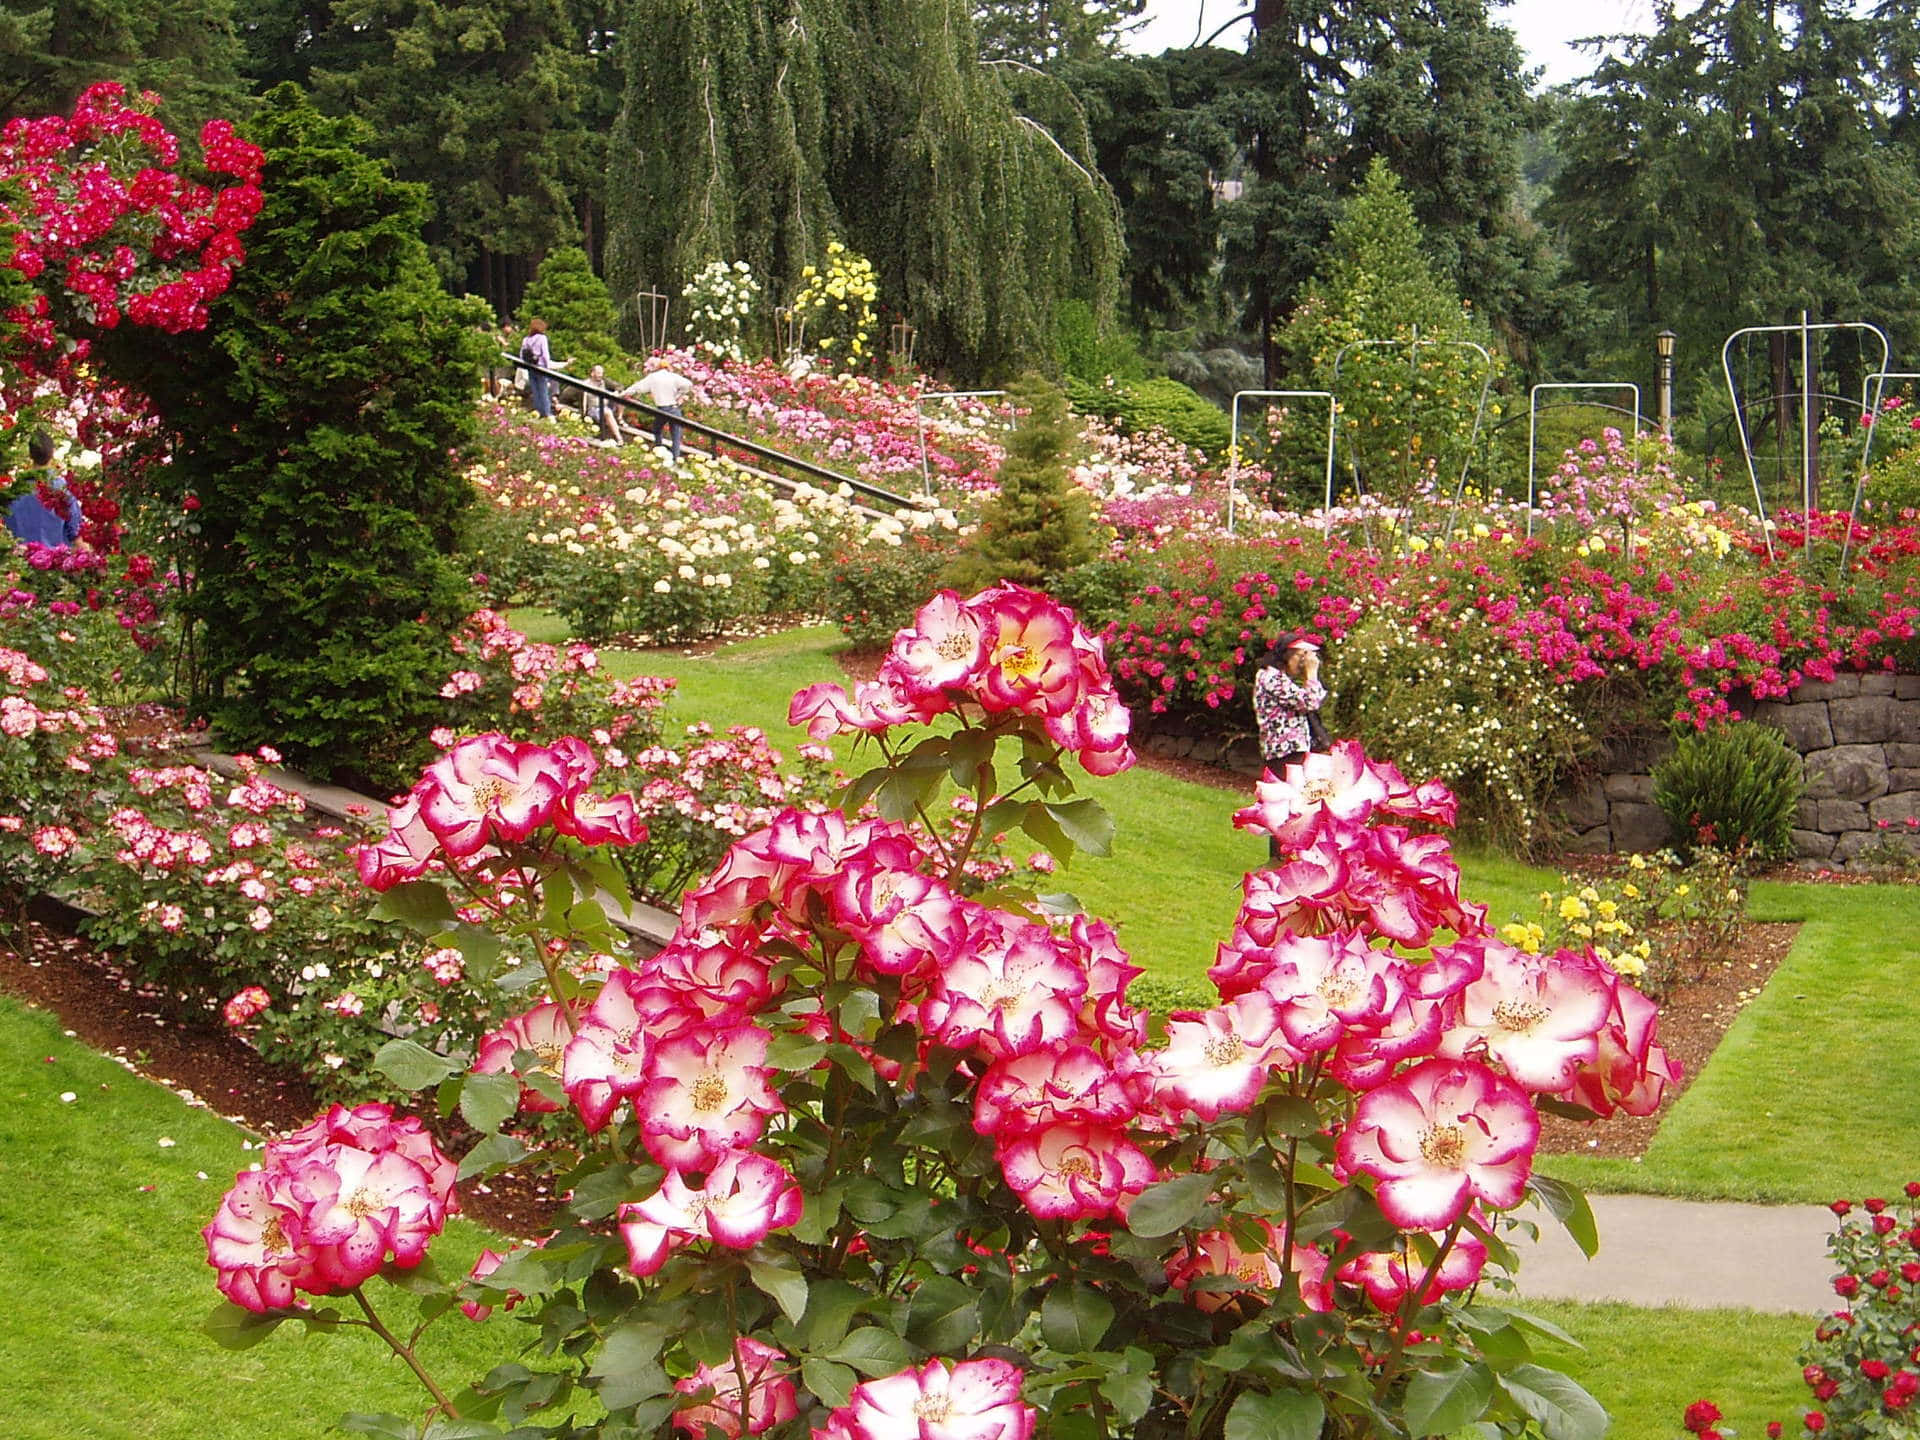 Rosasrosadas En Jardín En Una Imagen De Jardín.